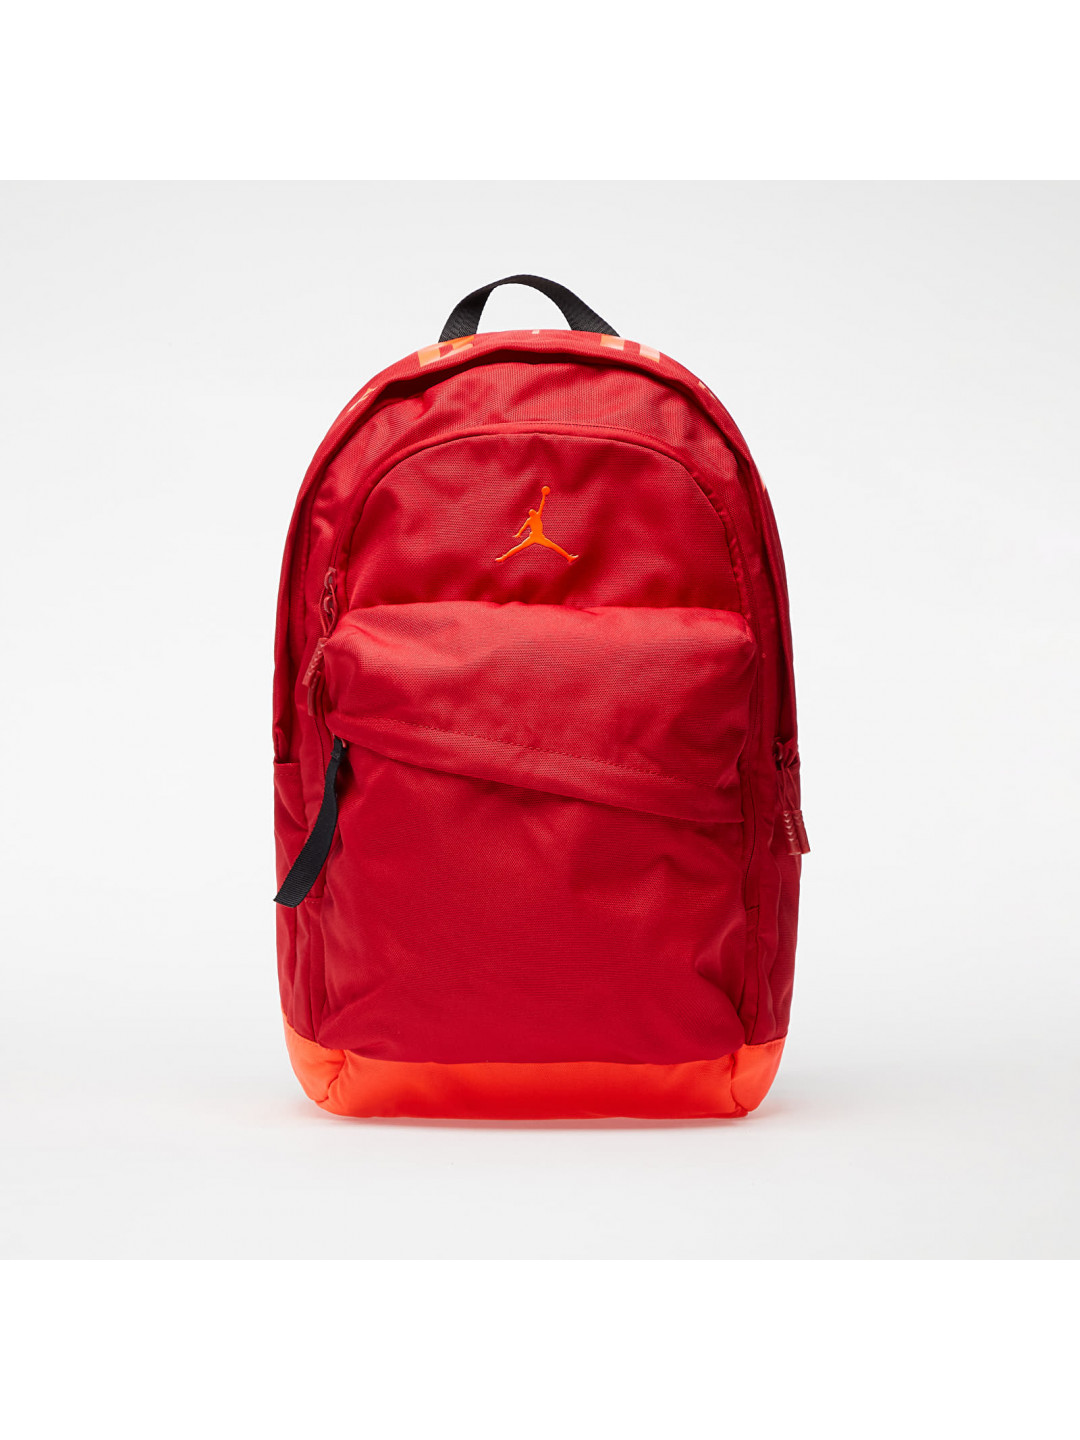 Jordan Air Patrol Backpack Red Neon Orange